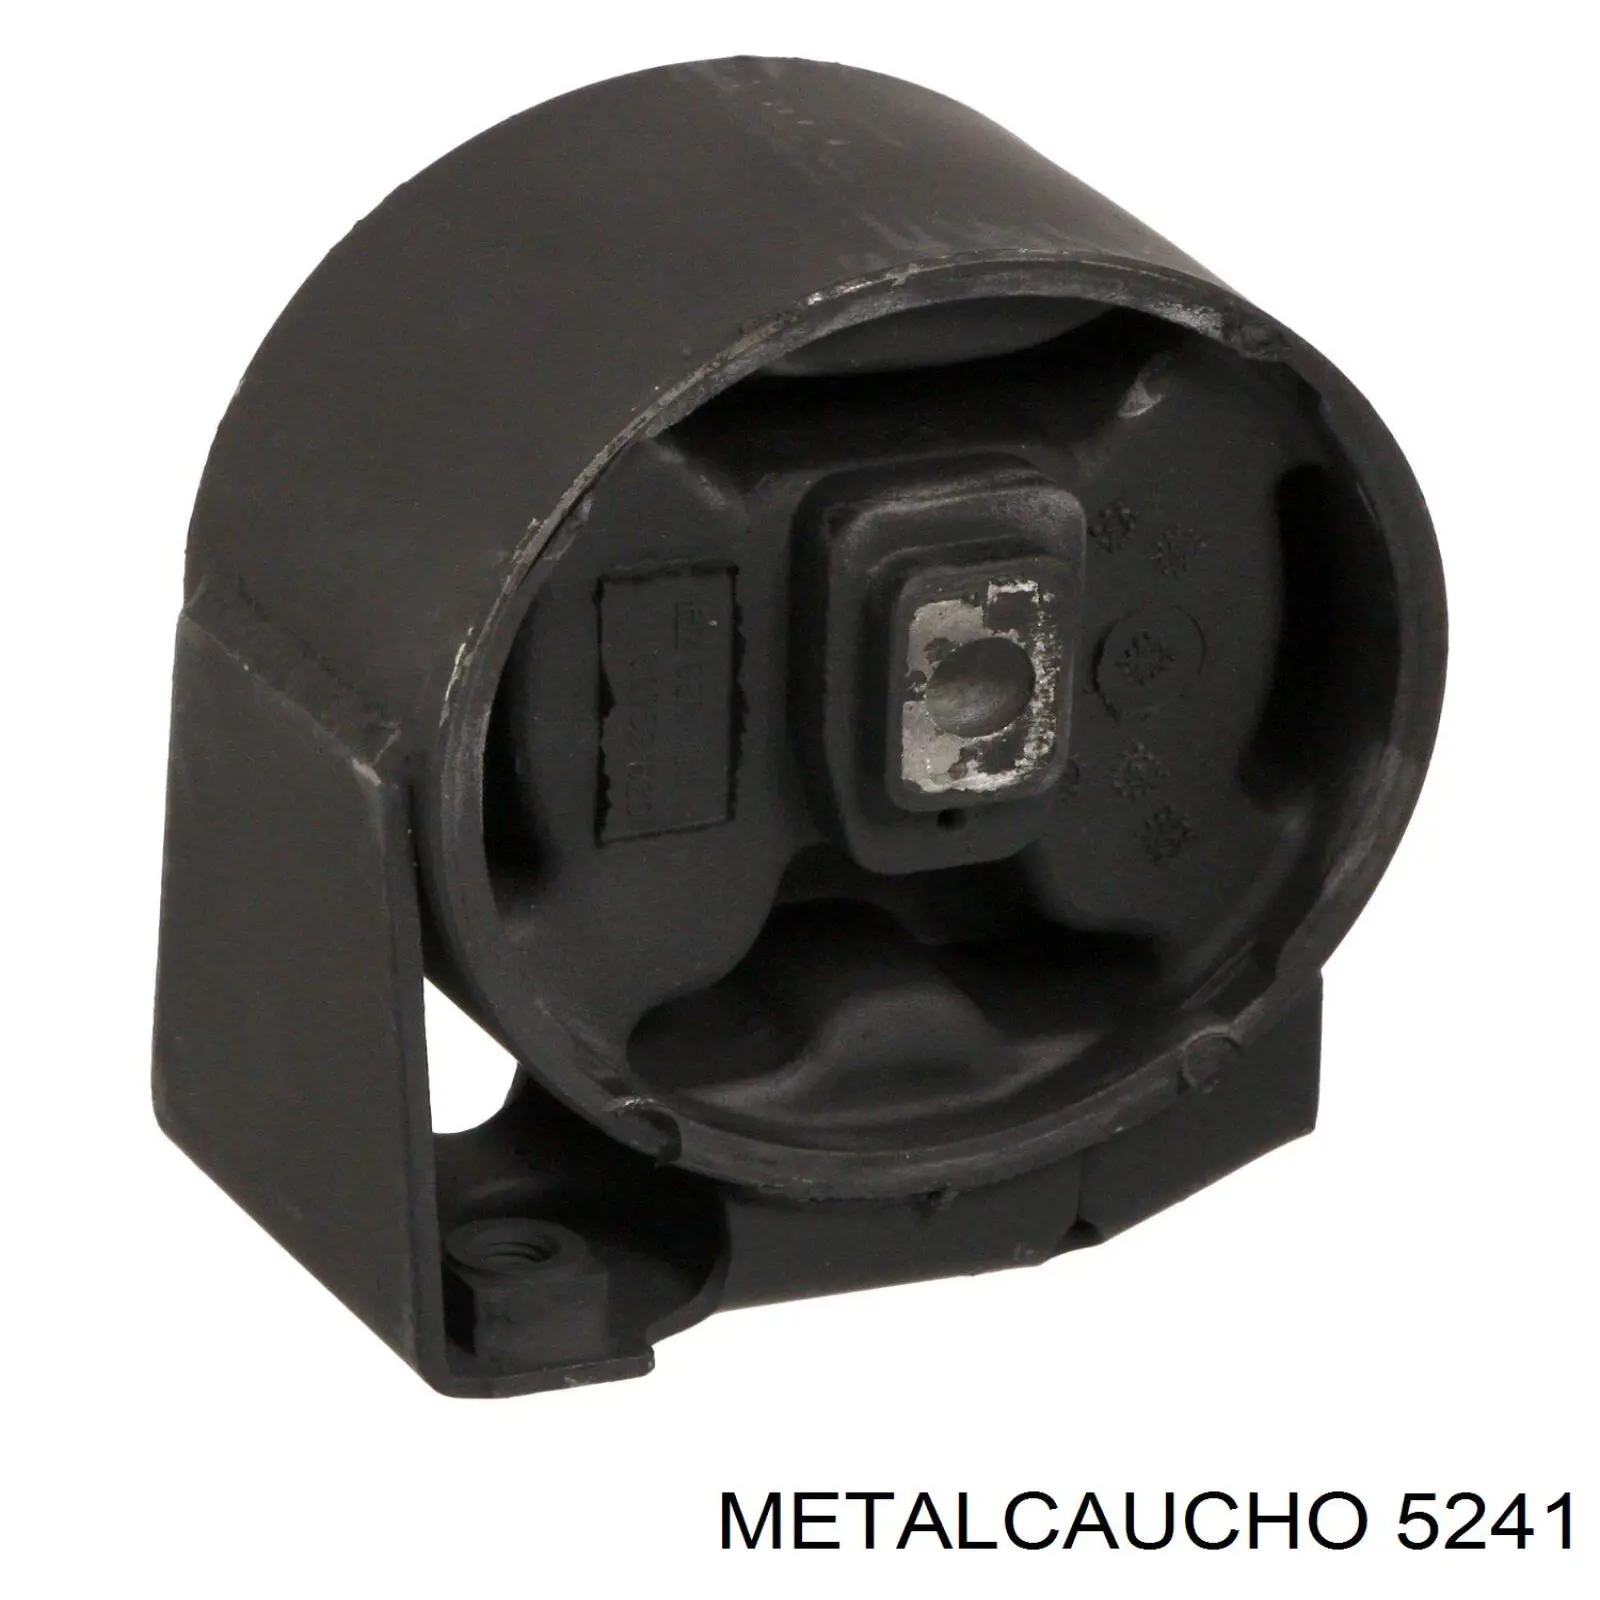 5241 Metalcaucho caja del termostato